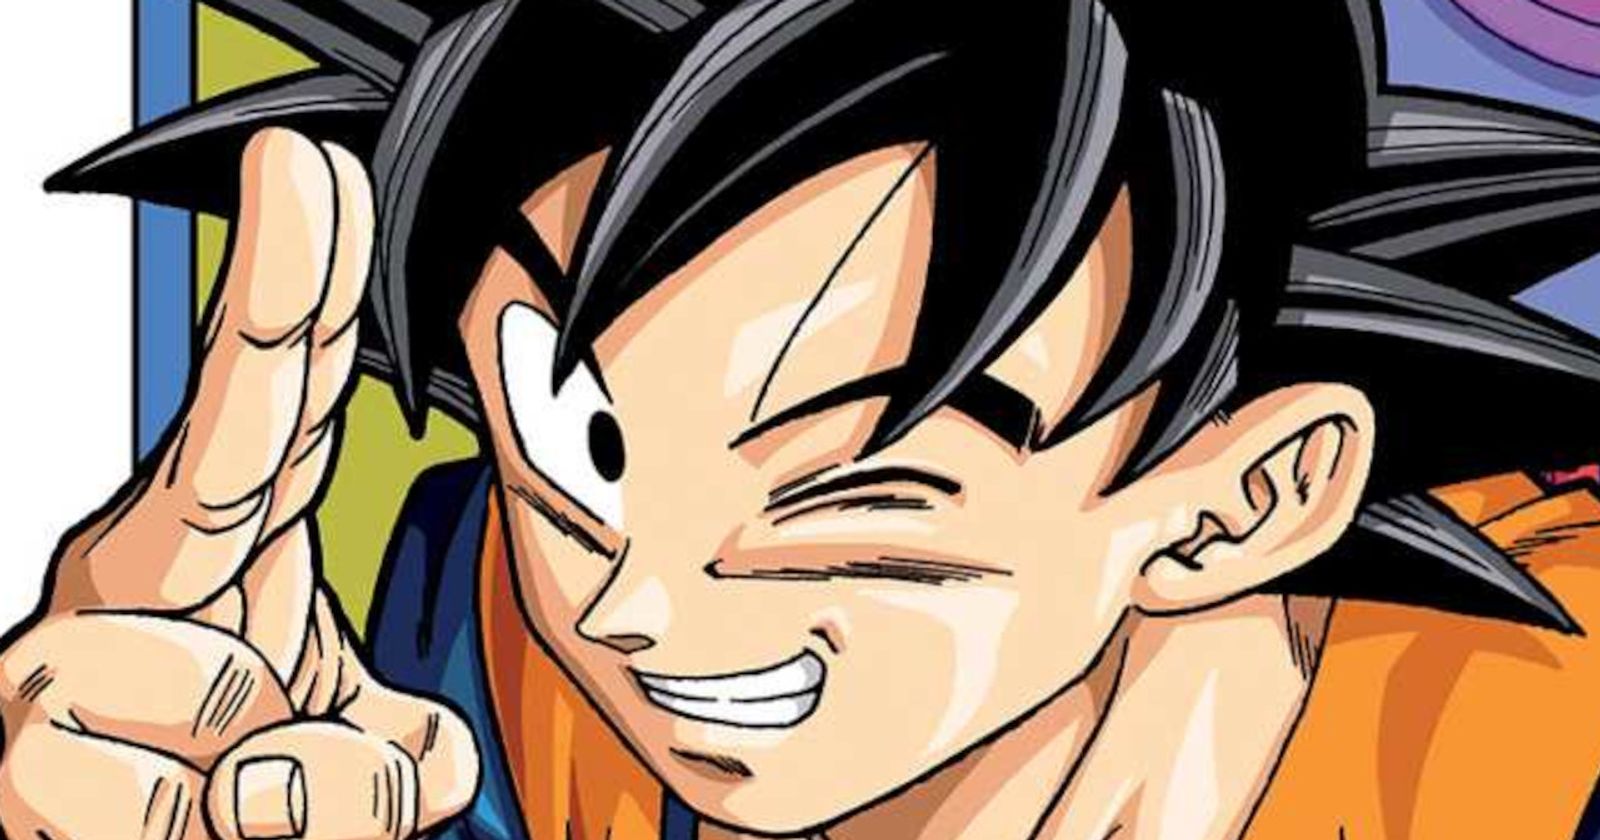 Dragon Ball Super manga return slated for December 2022, new arc